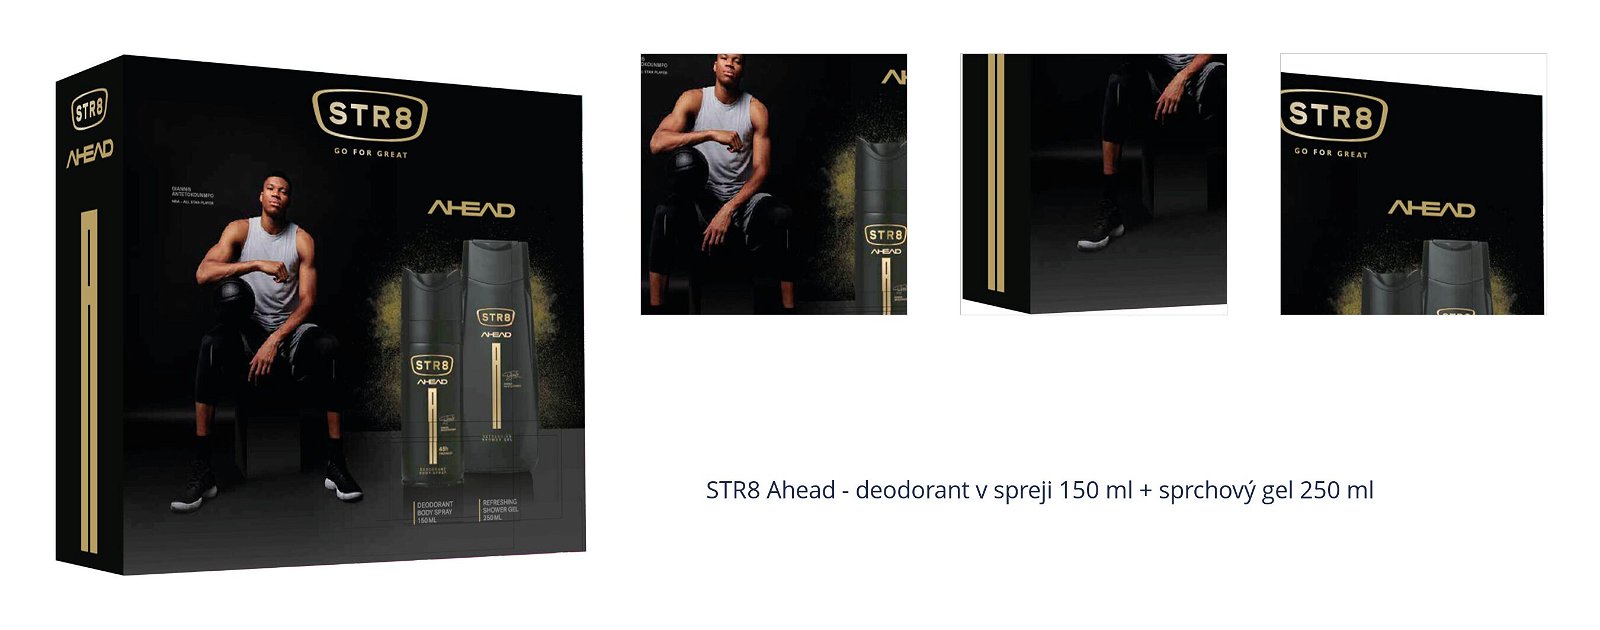 STR8 Ahead - deodorant v spreji 150 ml + sprchový gel 250 ml 1